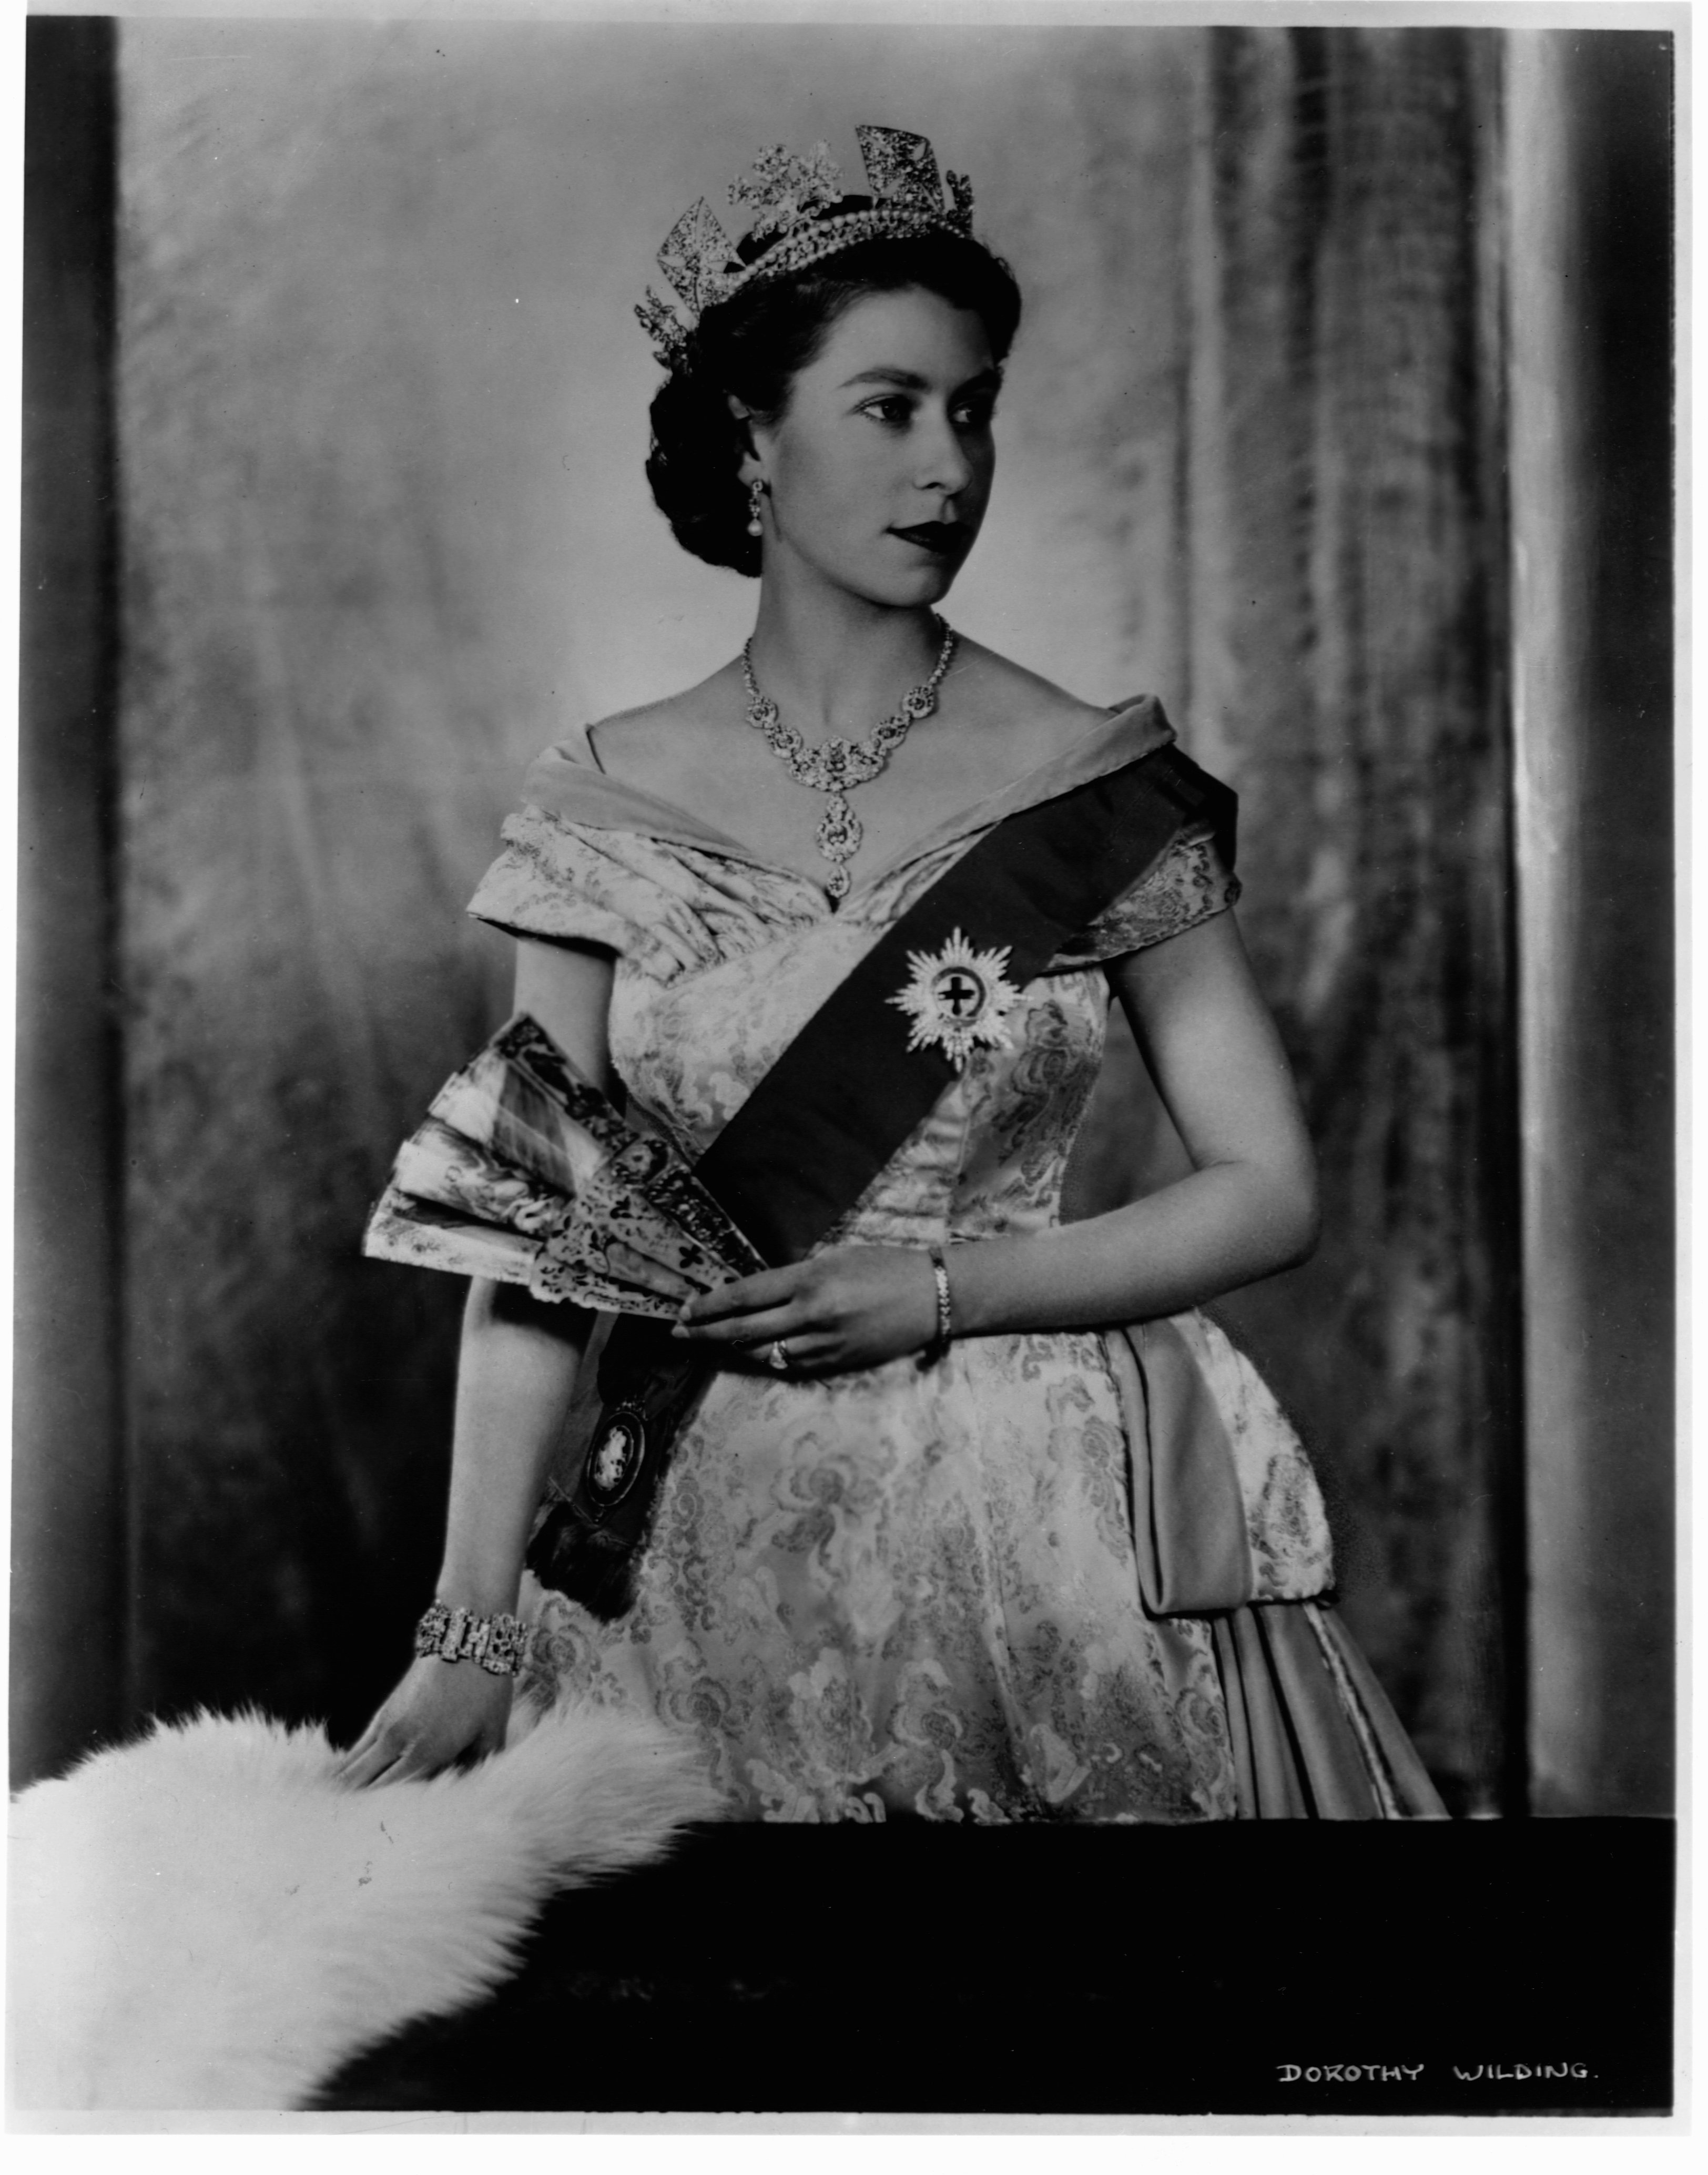 Portrait of Queen Elizabeth II | Source: Getty Images